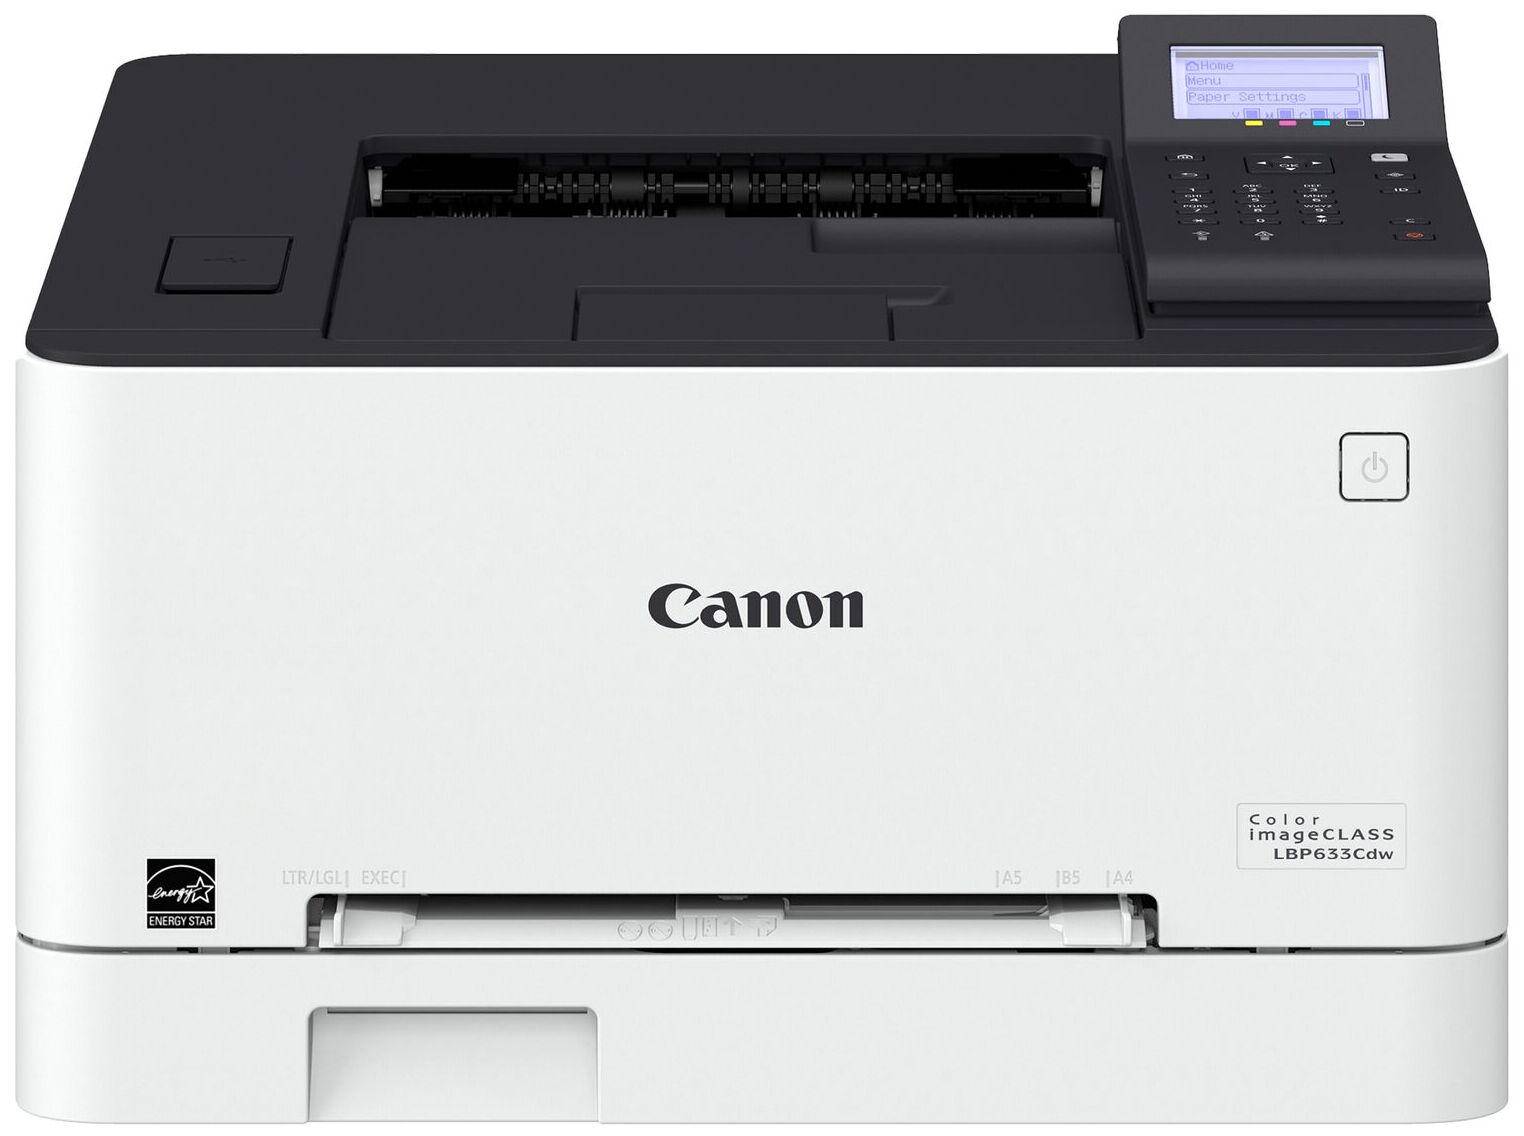 Принтер Canon Canon i-SENSYS LBP633Cdw 5159C001/A4 цветной/печать Лазерный 1200x1200dpi 21стр.мин/Wi-Fi Сетевой интерфей